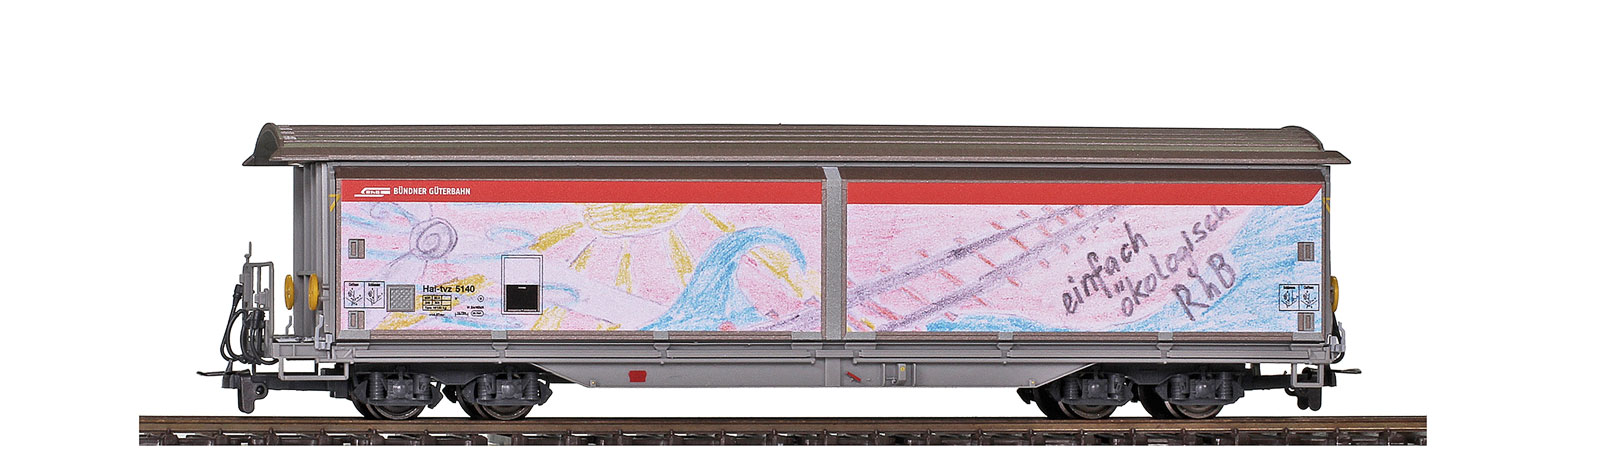 RhB Hai-tvz 5140 nachhaltige- Transporte, Schiebewandwagen